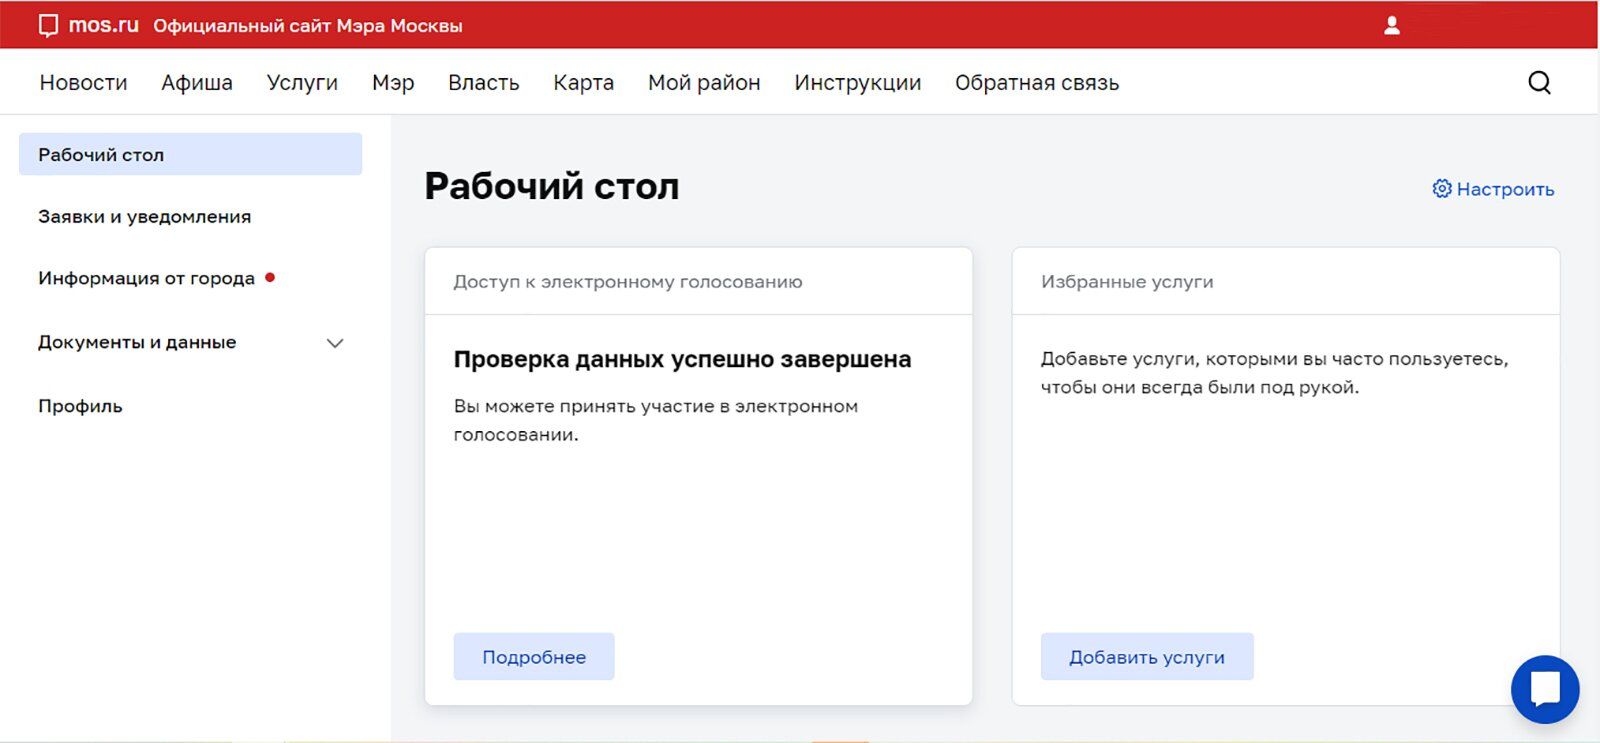 На mos.ru появился сервис для проверки возможности голосовать онлайн на выборах в сентябре